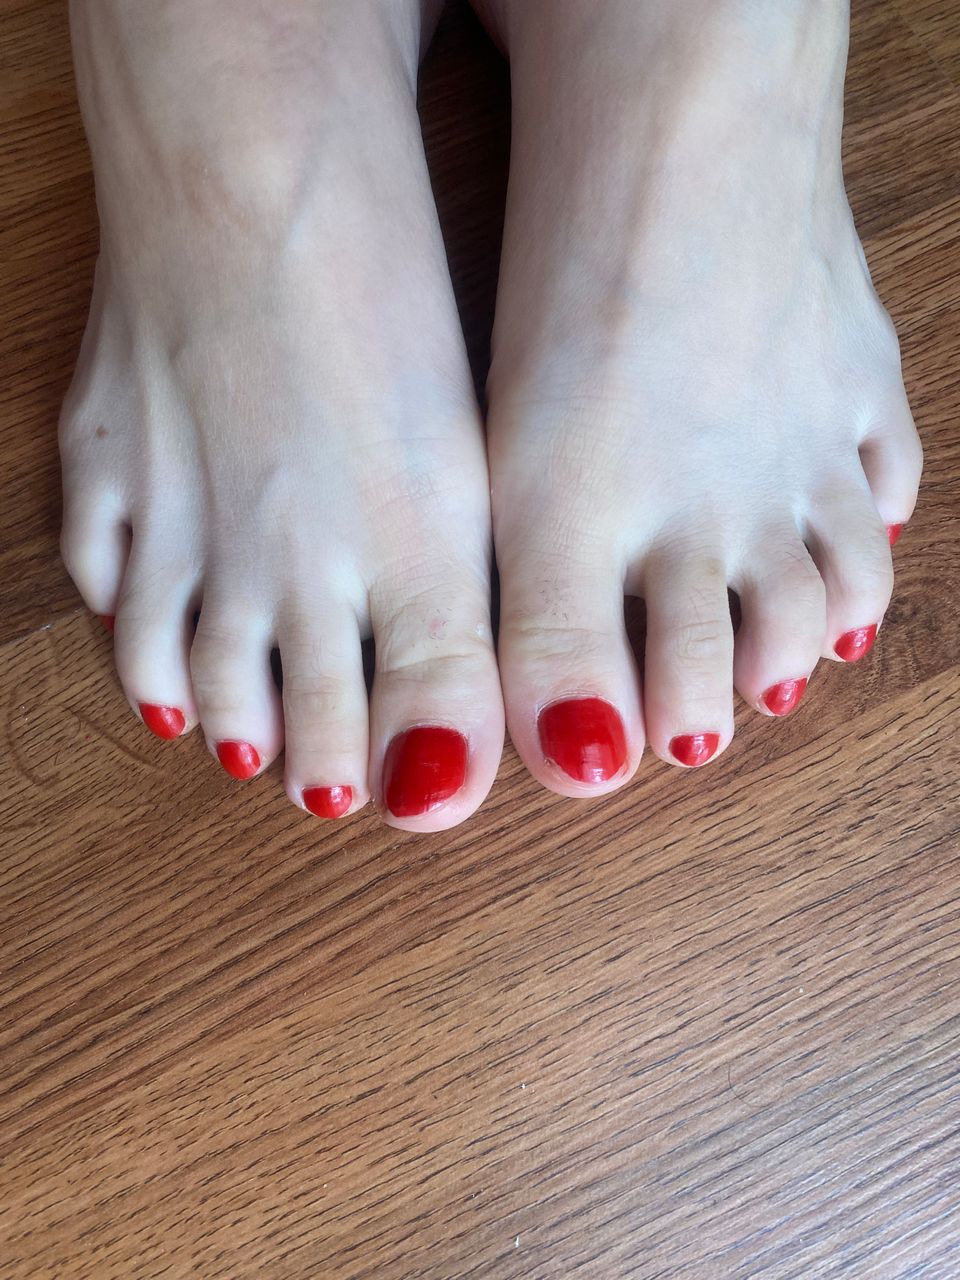 Gabrielle Von D My Red Toes